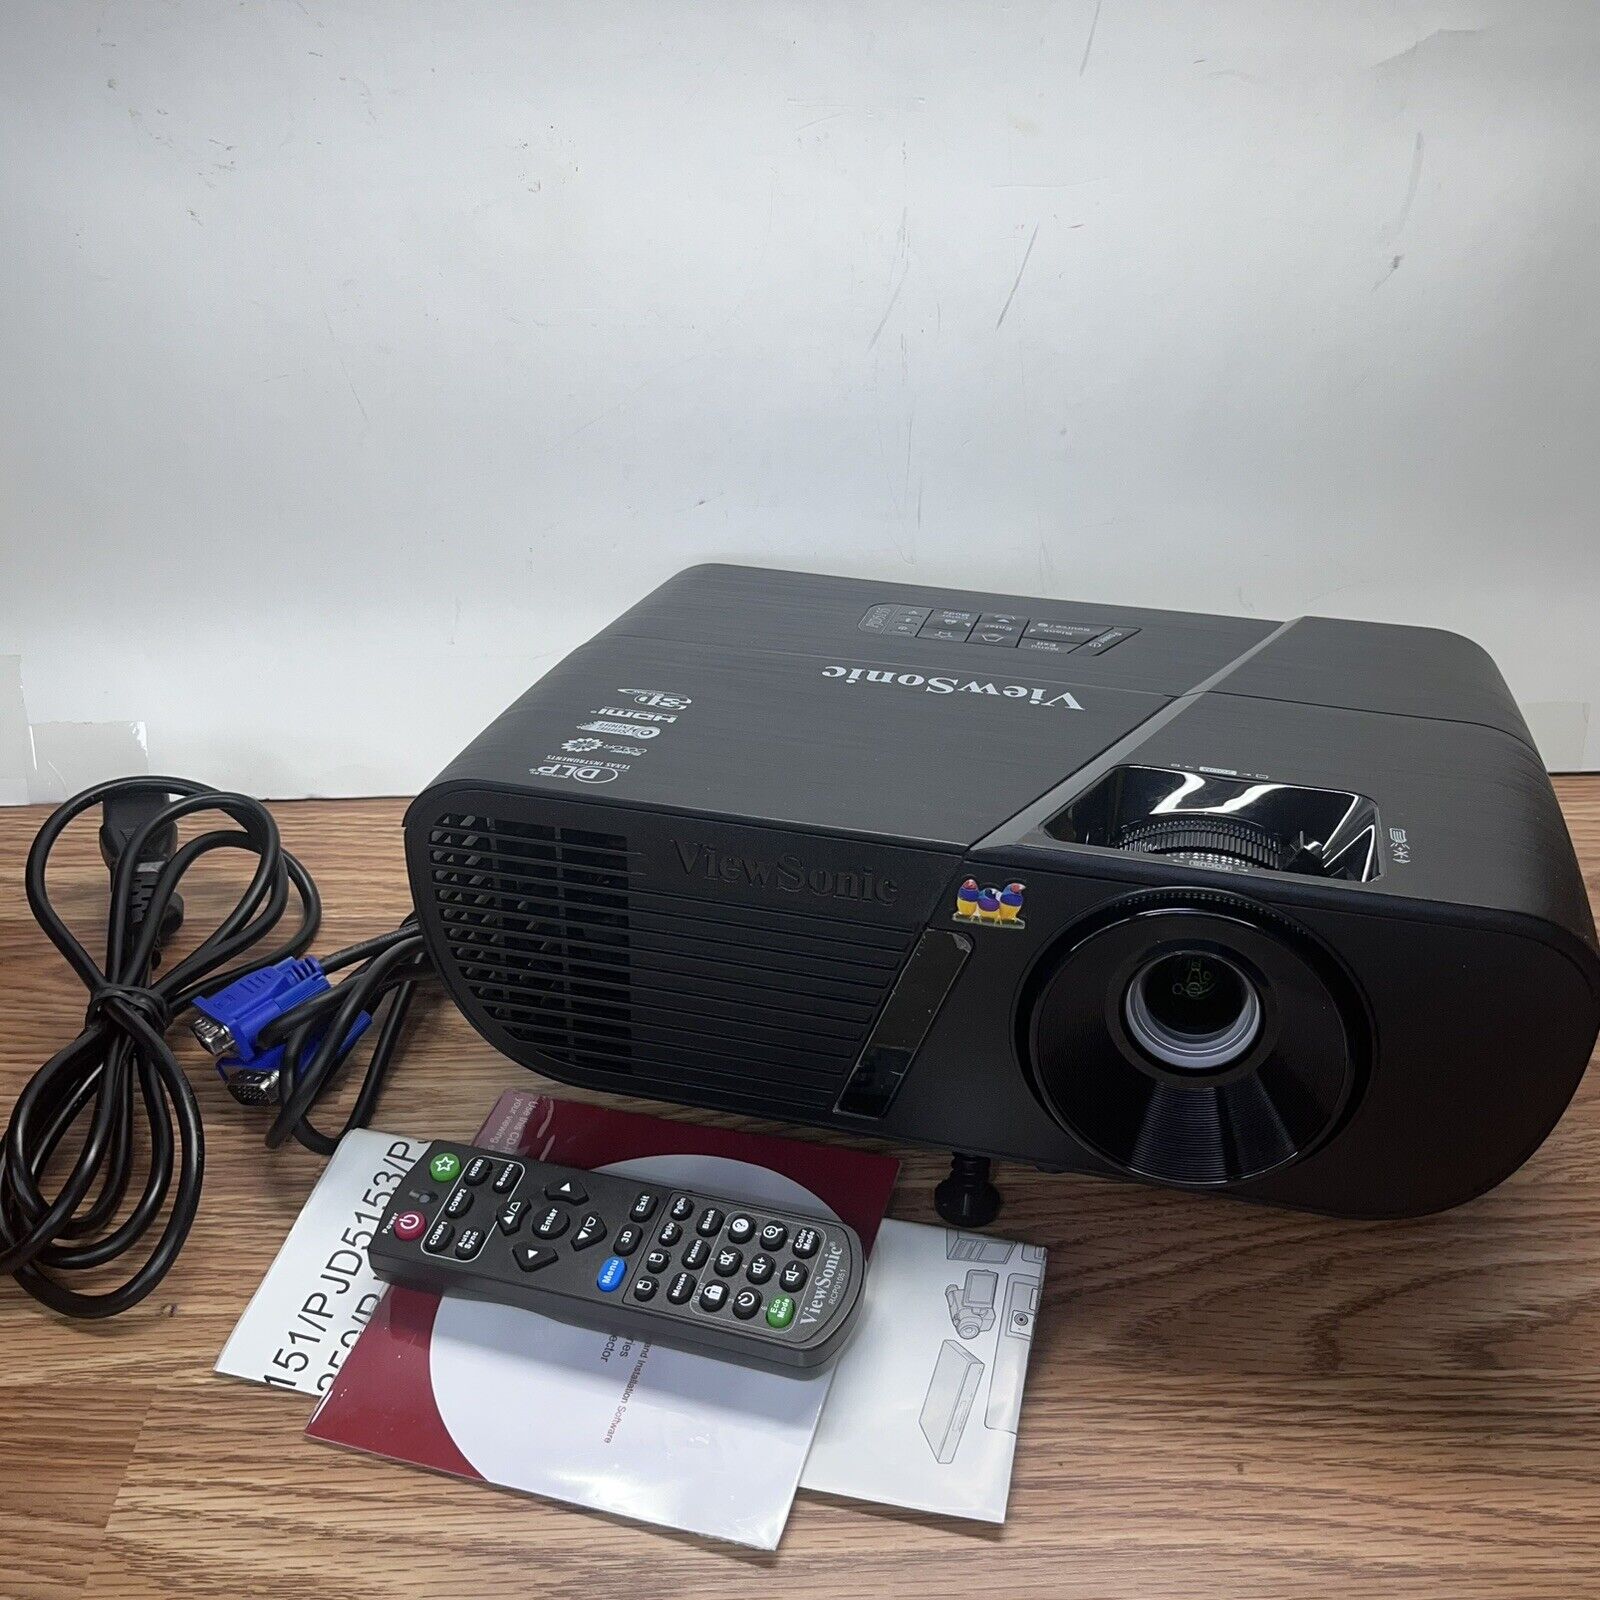 Viewsonic LightStream PJD5155 PJD5 Series DLP TV Projector HDMI